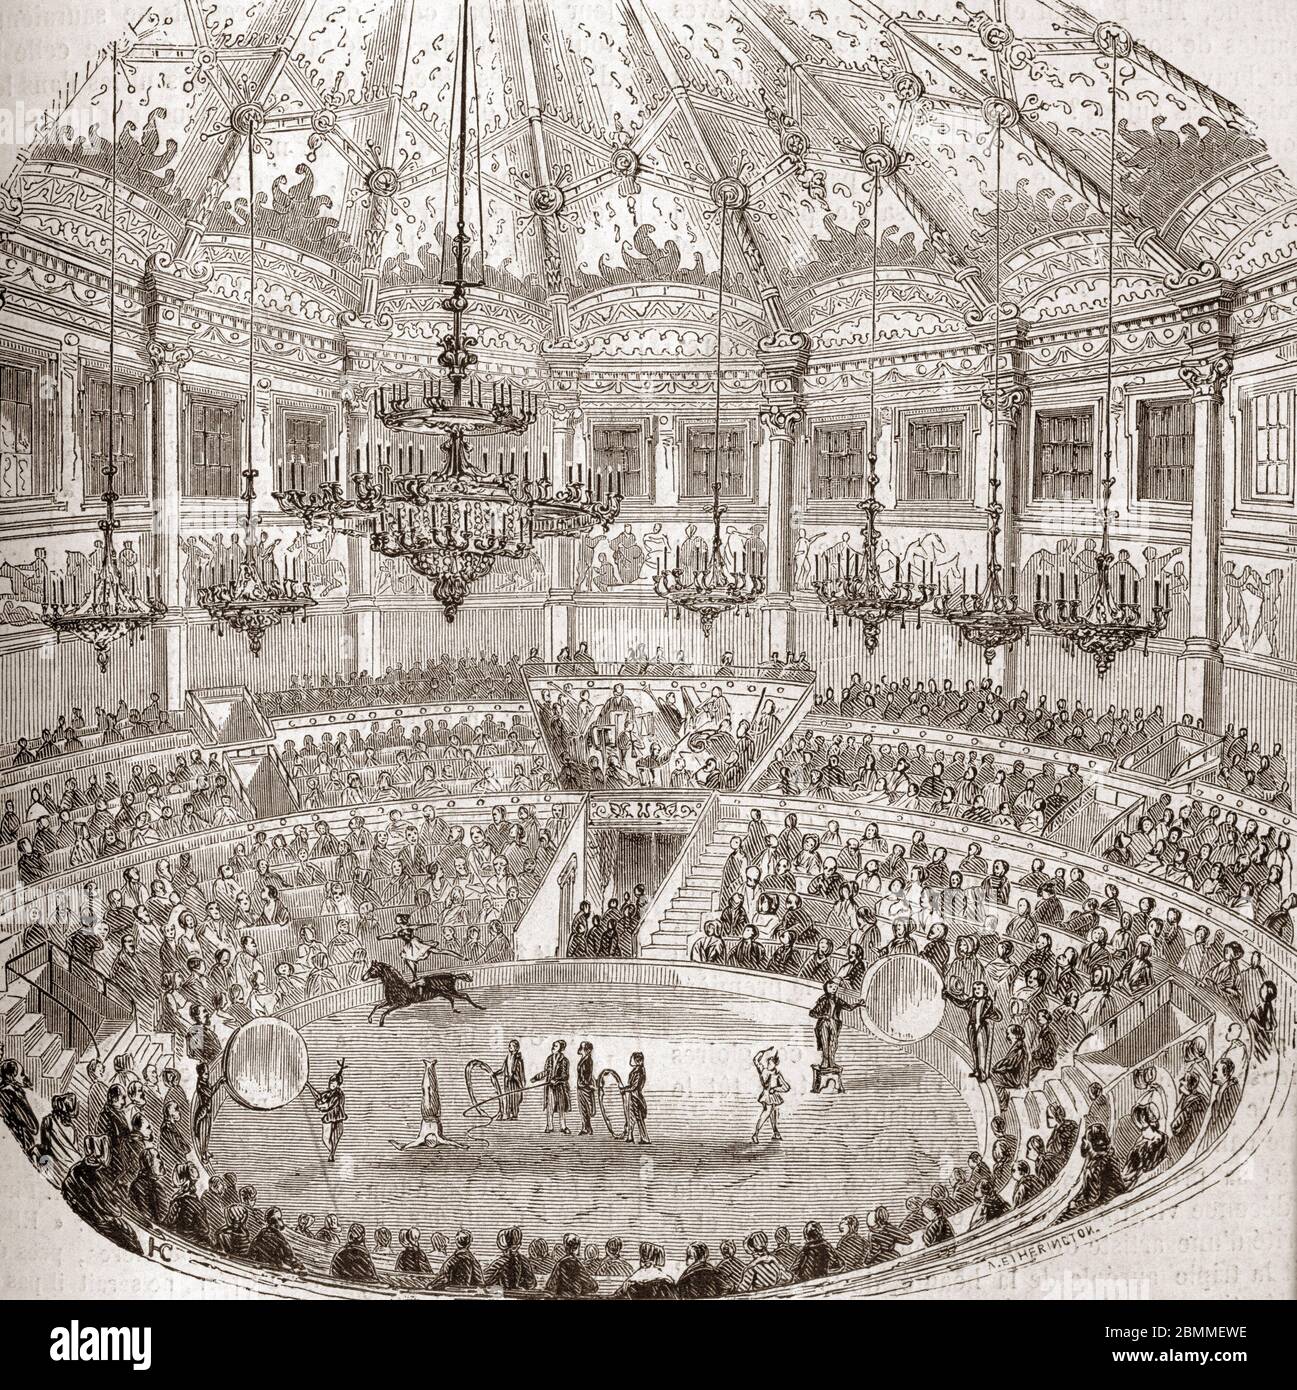 Monuments de Paris : vue d'un specacle de cirque avec des dresseurs de chevaux au cirque Napoleon (cirque-Napoleon puis cirque d'Hiver) a Paris, 1855 Foto Stock